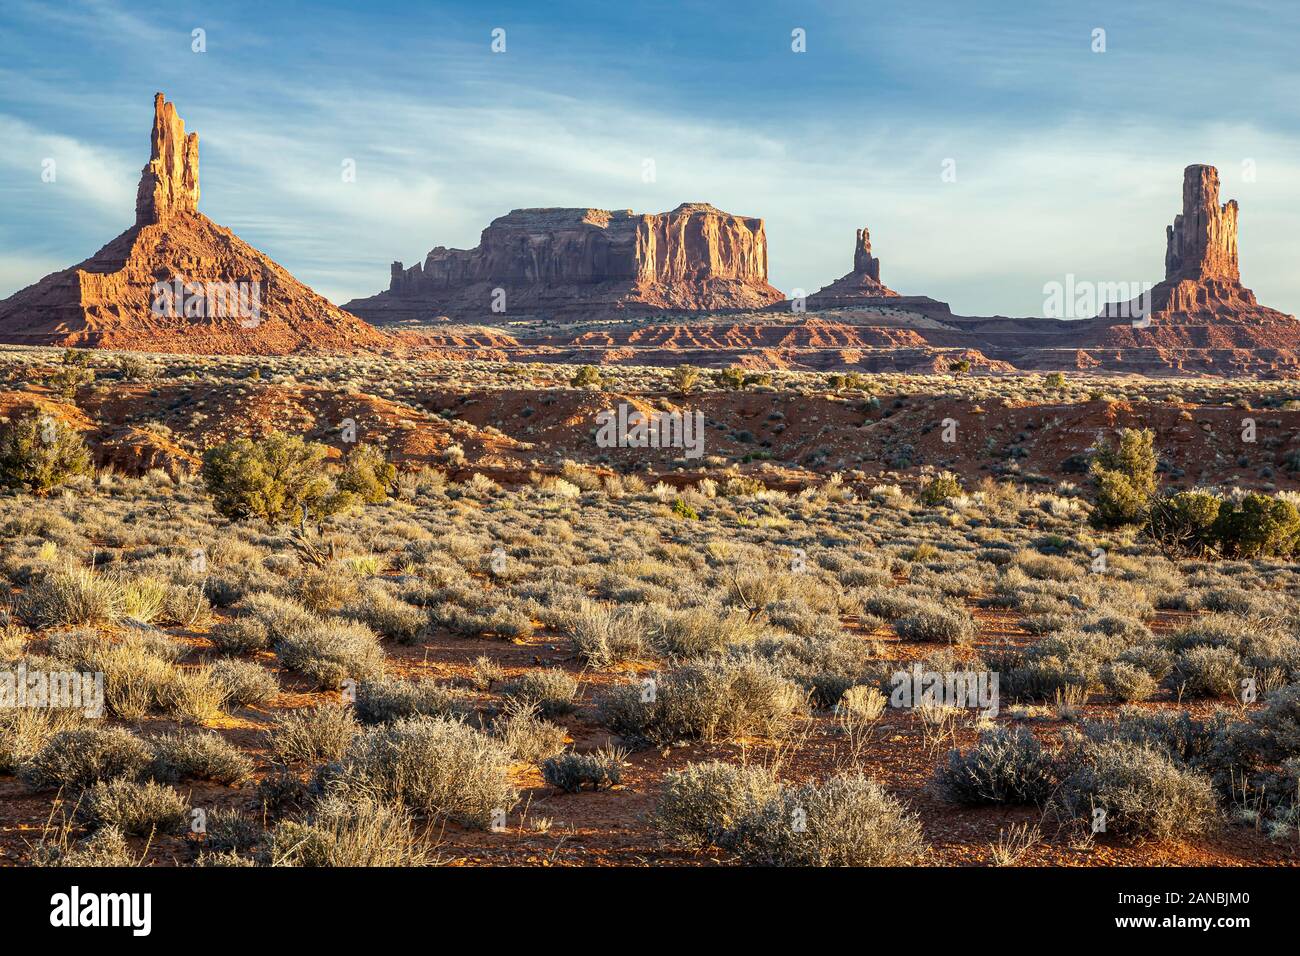 Grande indiano (L) e altri buttes, Monument Valley, Arizona e Utah border, STATI UNITI D'AMERICA Foto Stock